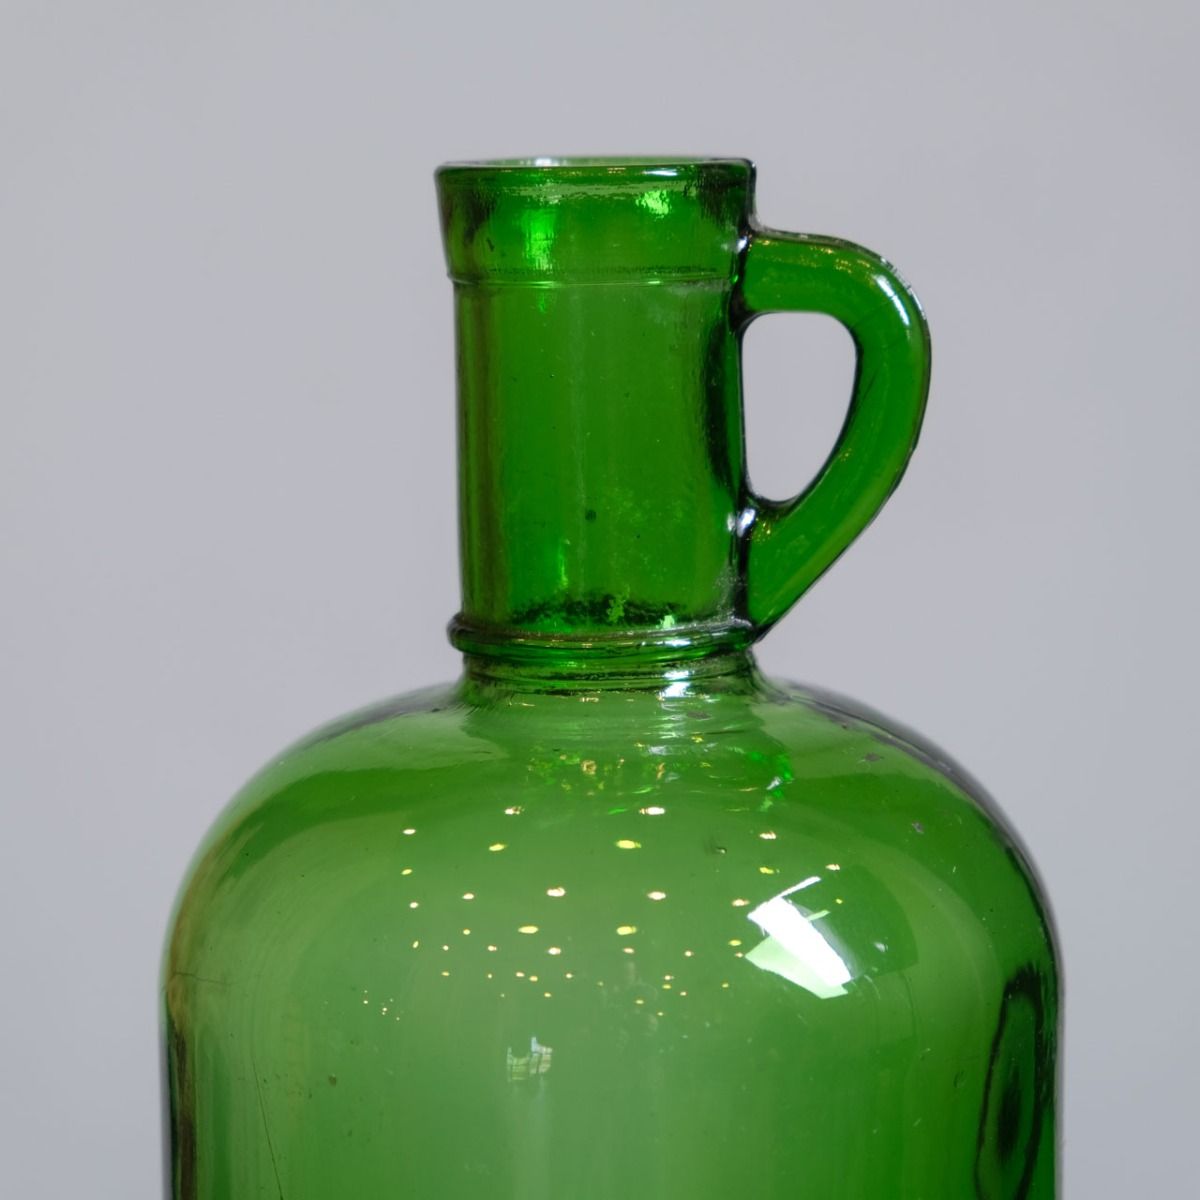 Antique green Oil Bottle